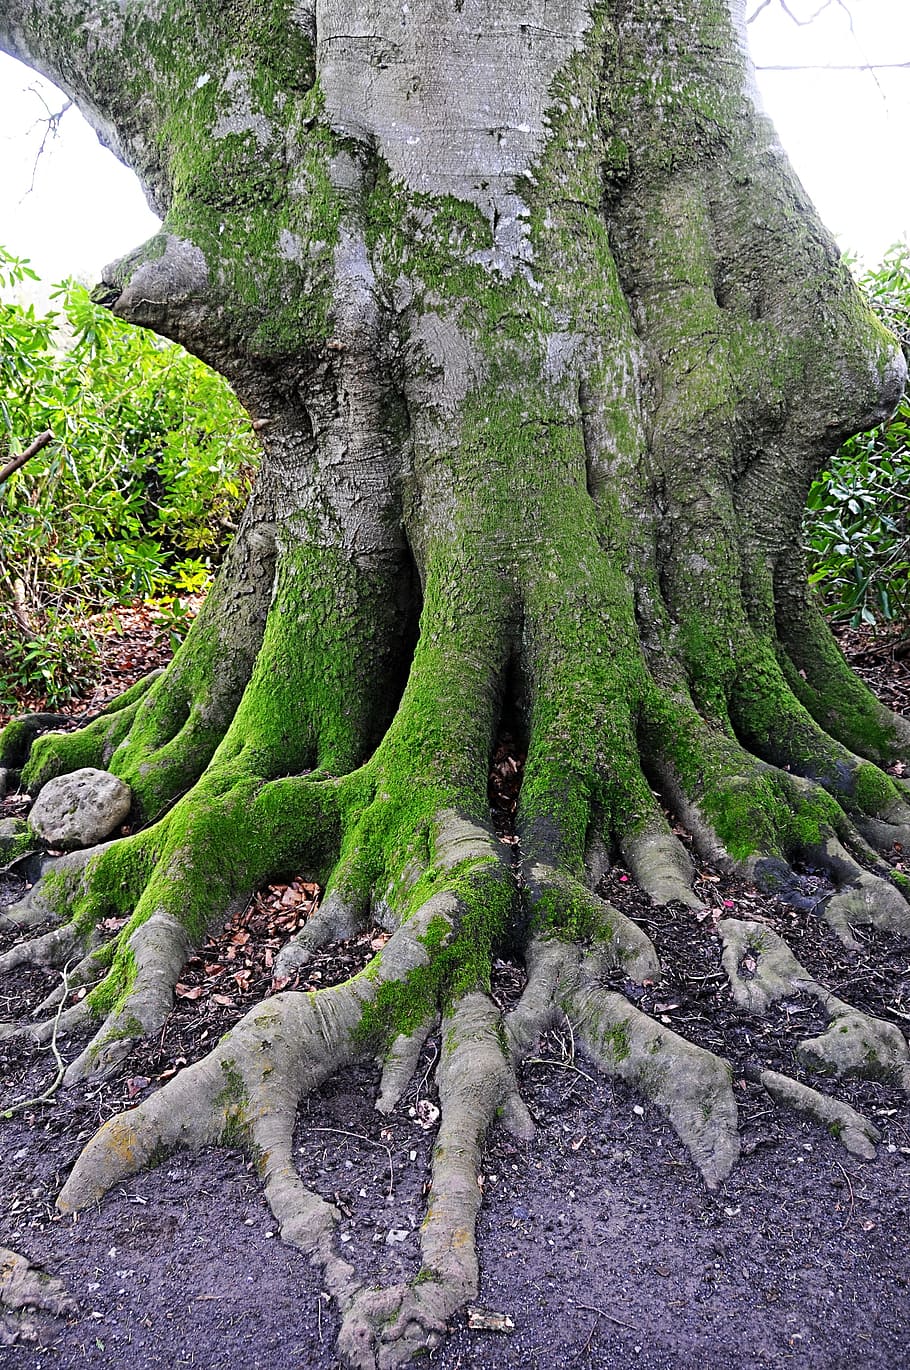 tronco de árbol cubierto de musgo, árbol viejo, Kingston Lacy, National Trust, Reino Unido, naturaleza, árbol, árboles, musgo, líquenes